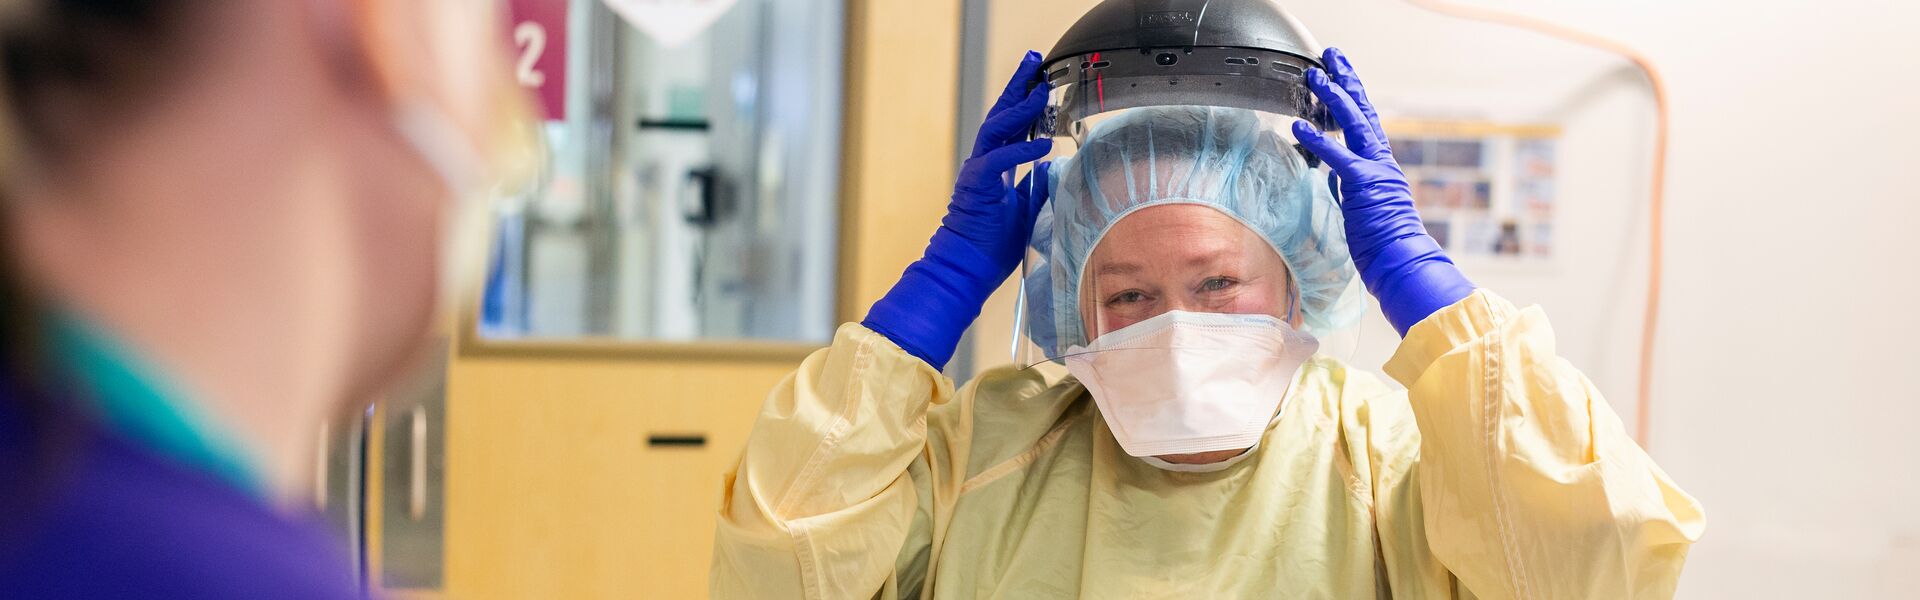 Nurse in PPE image